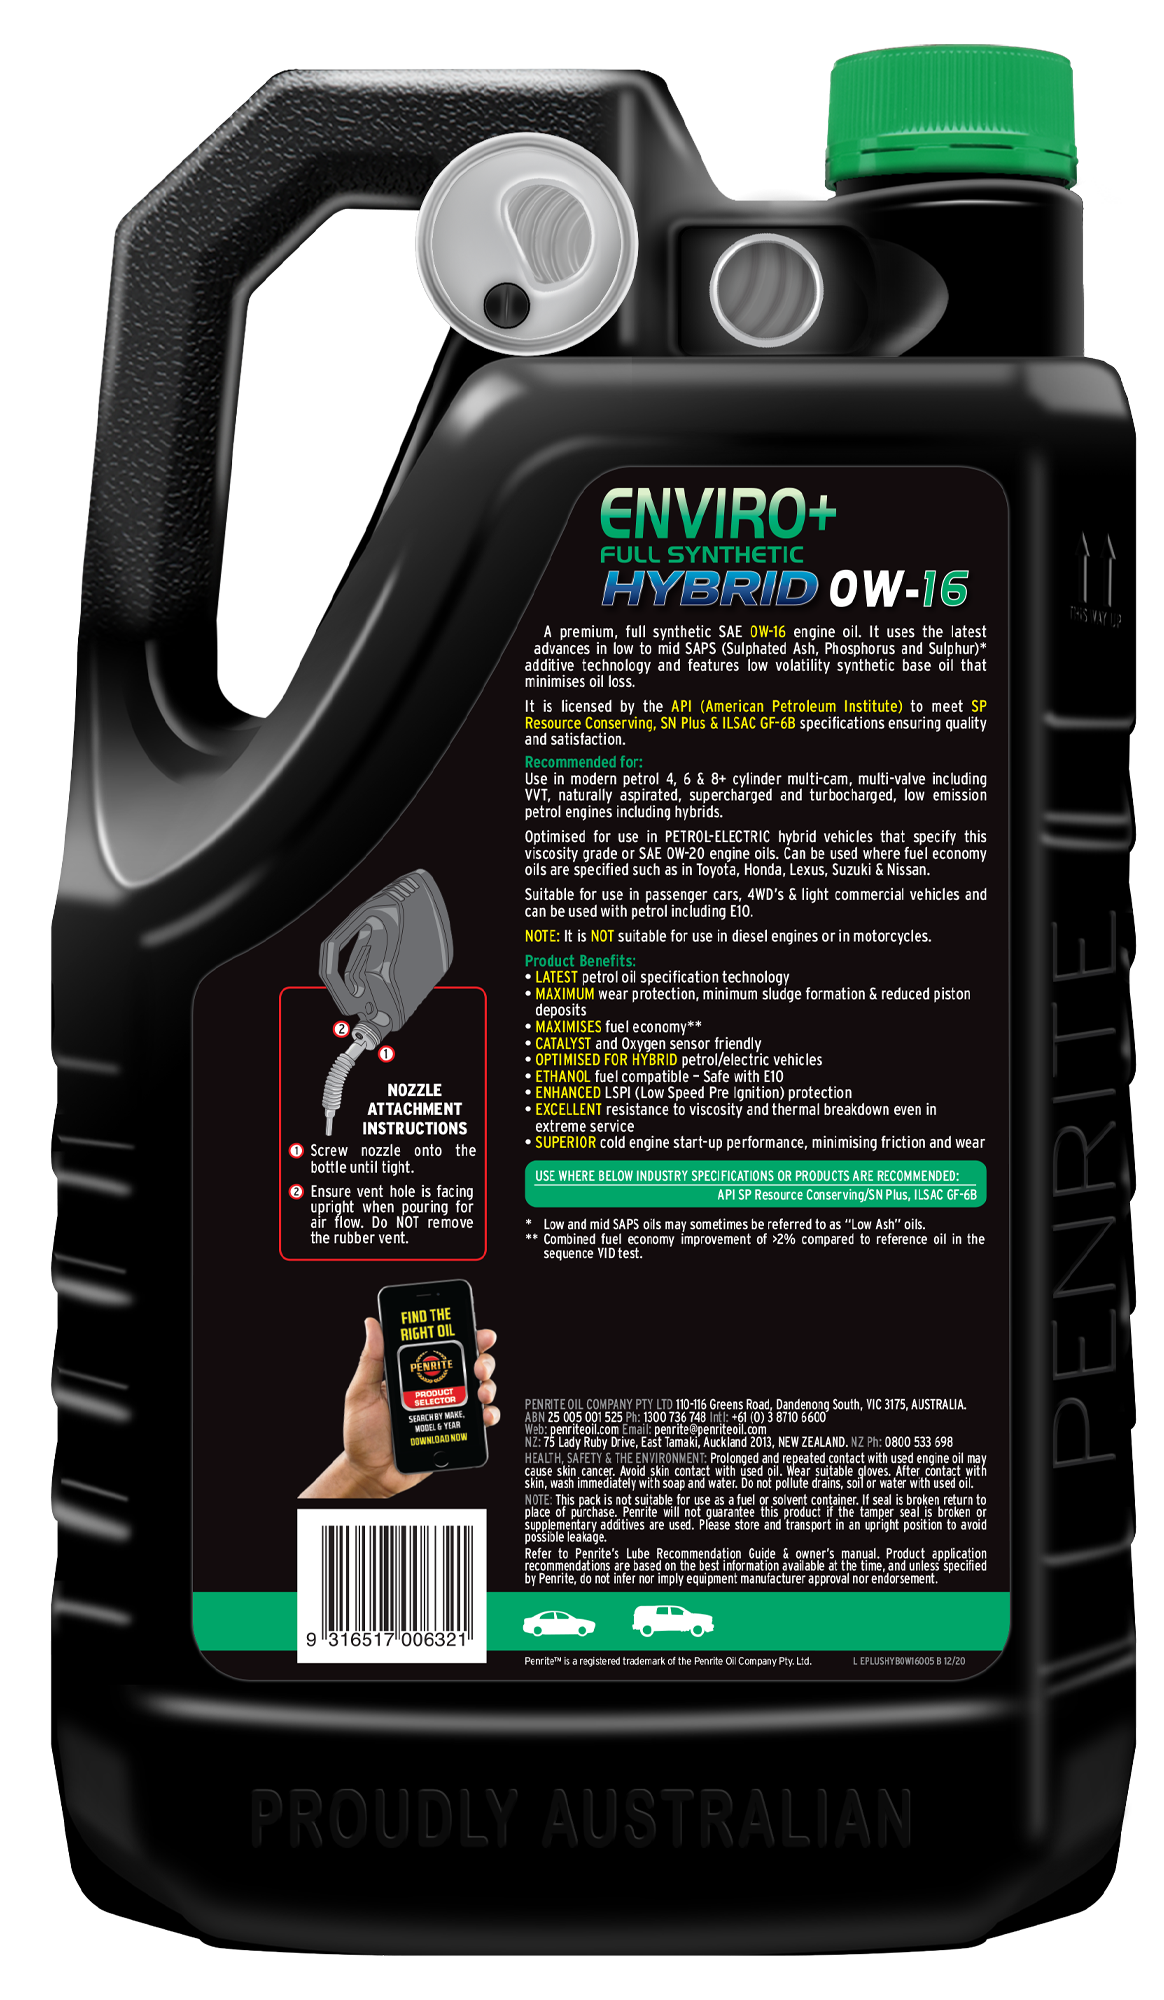 ENVIRO+ HYBRID 0W-16 (FULL SYN.) 5L - Penrite | Universal Auto Spares